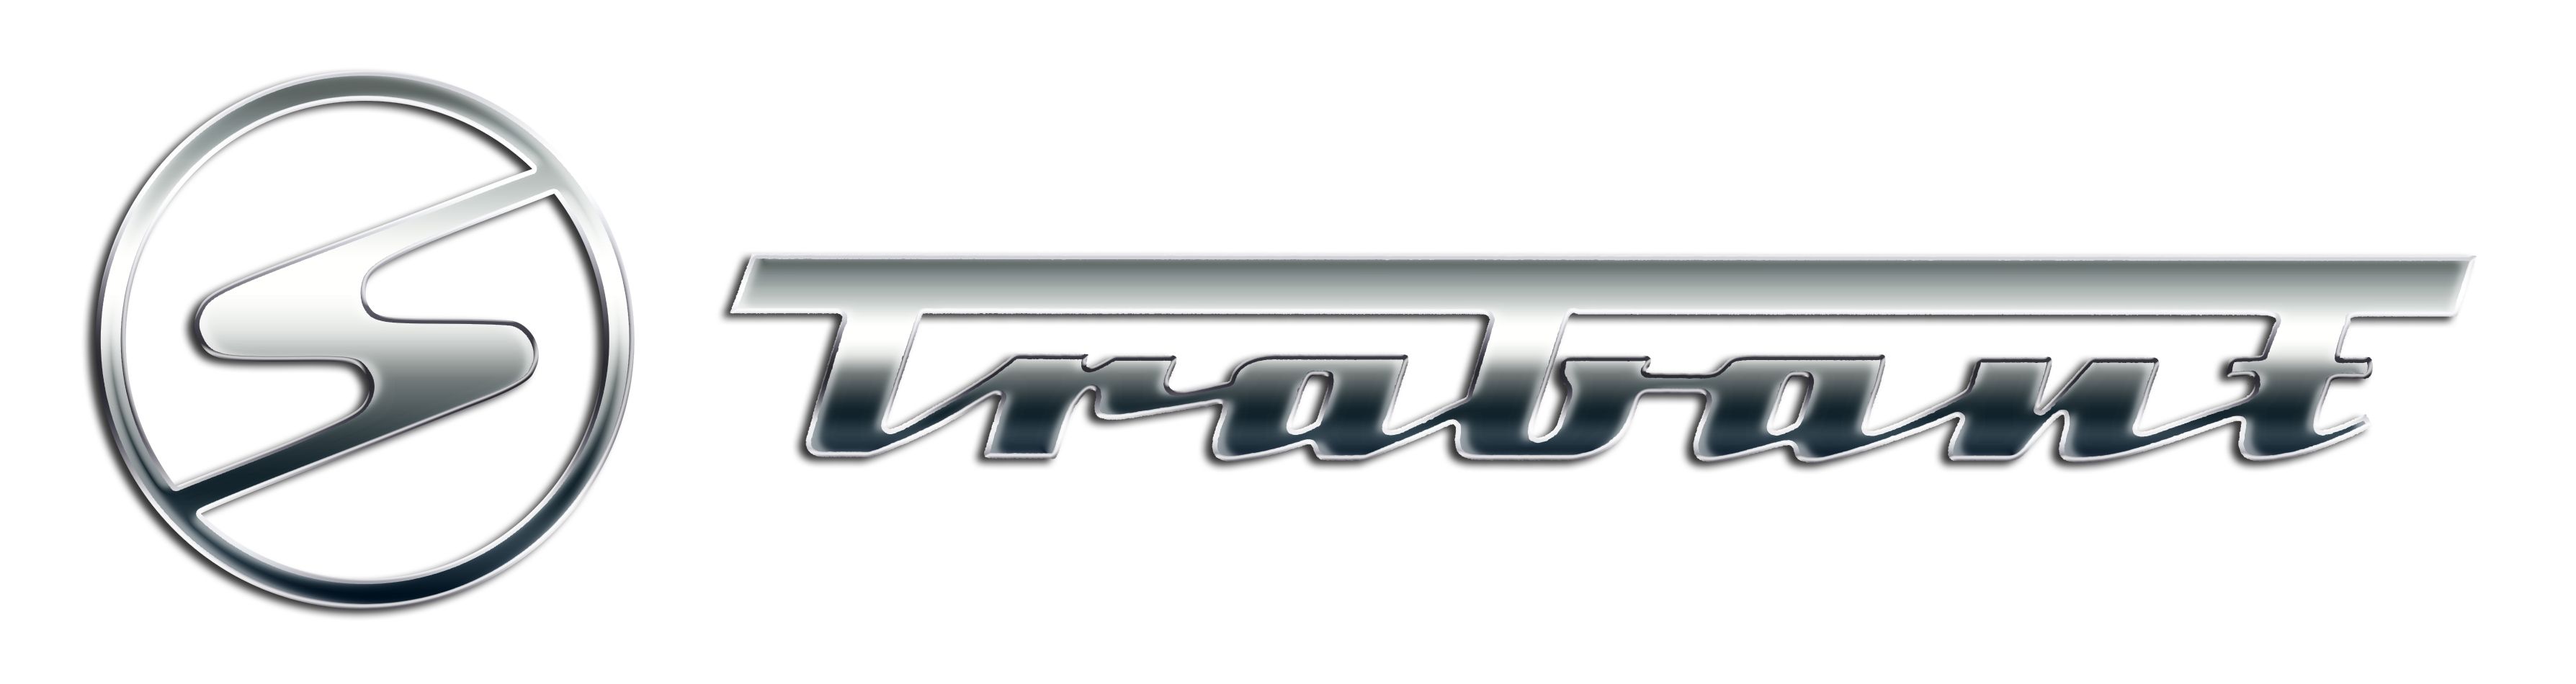 Trabant logo